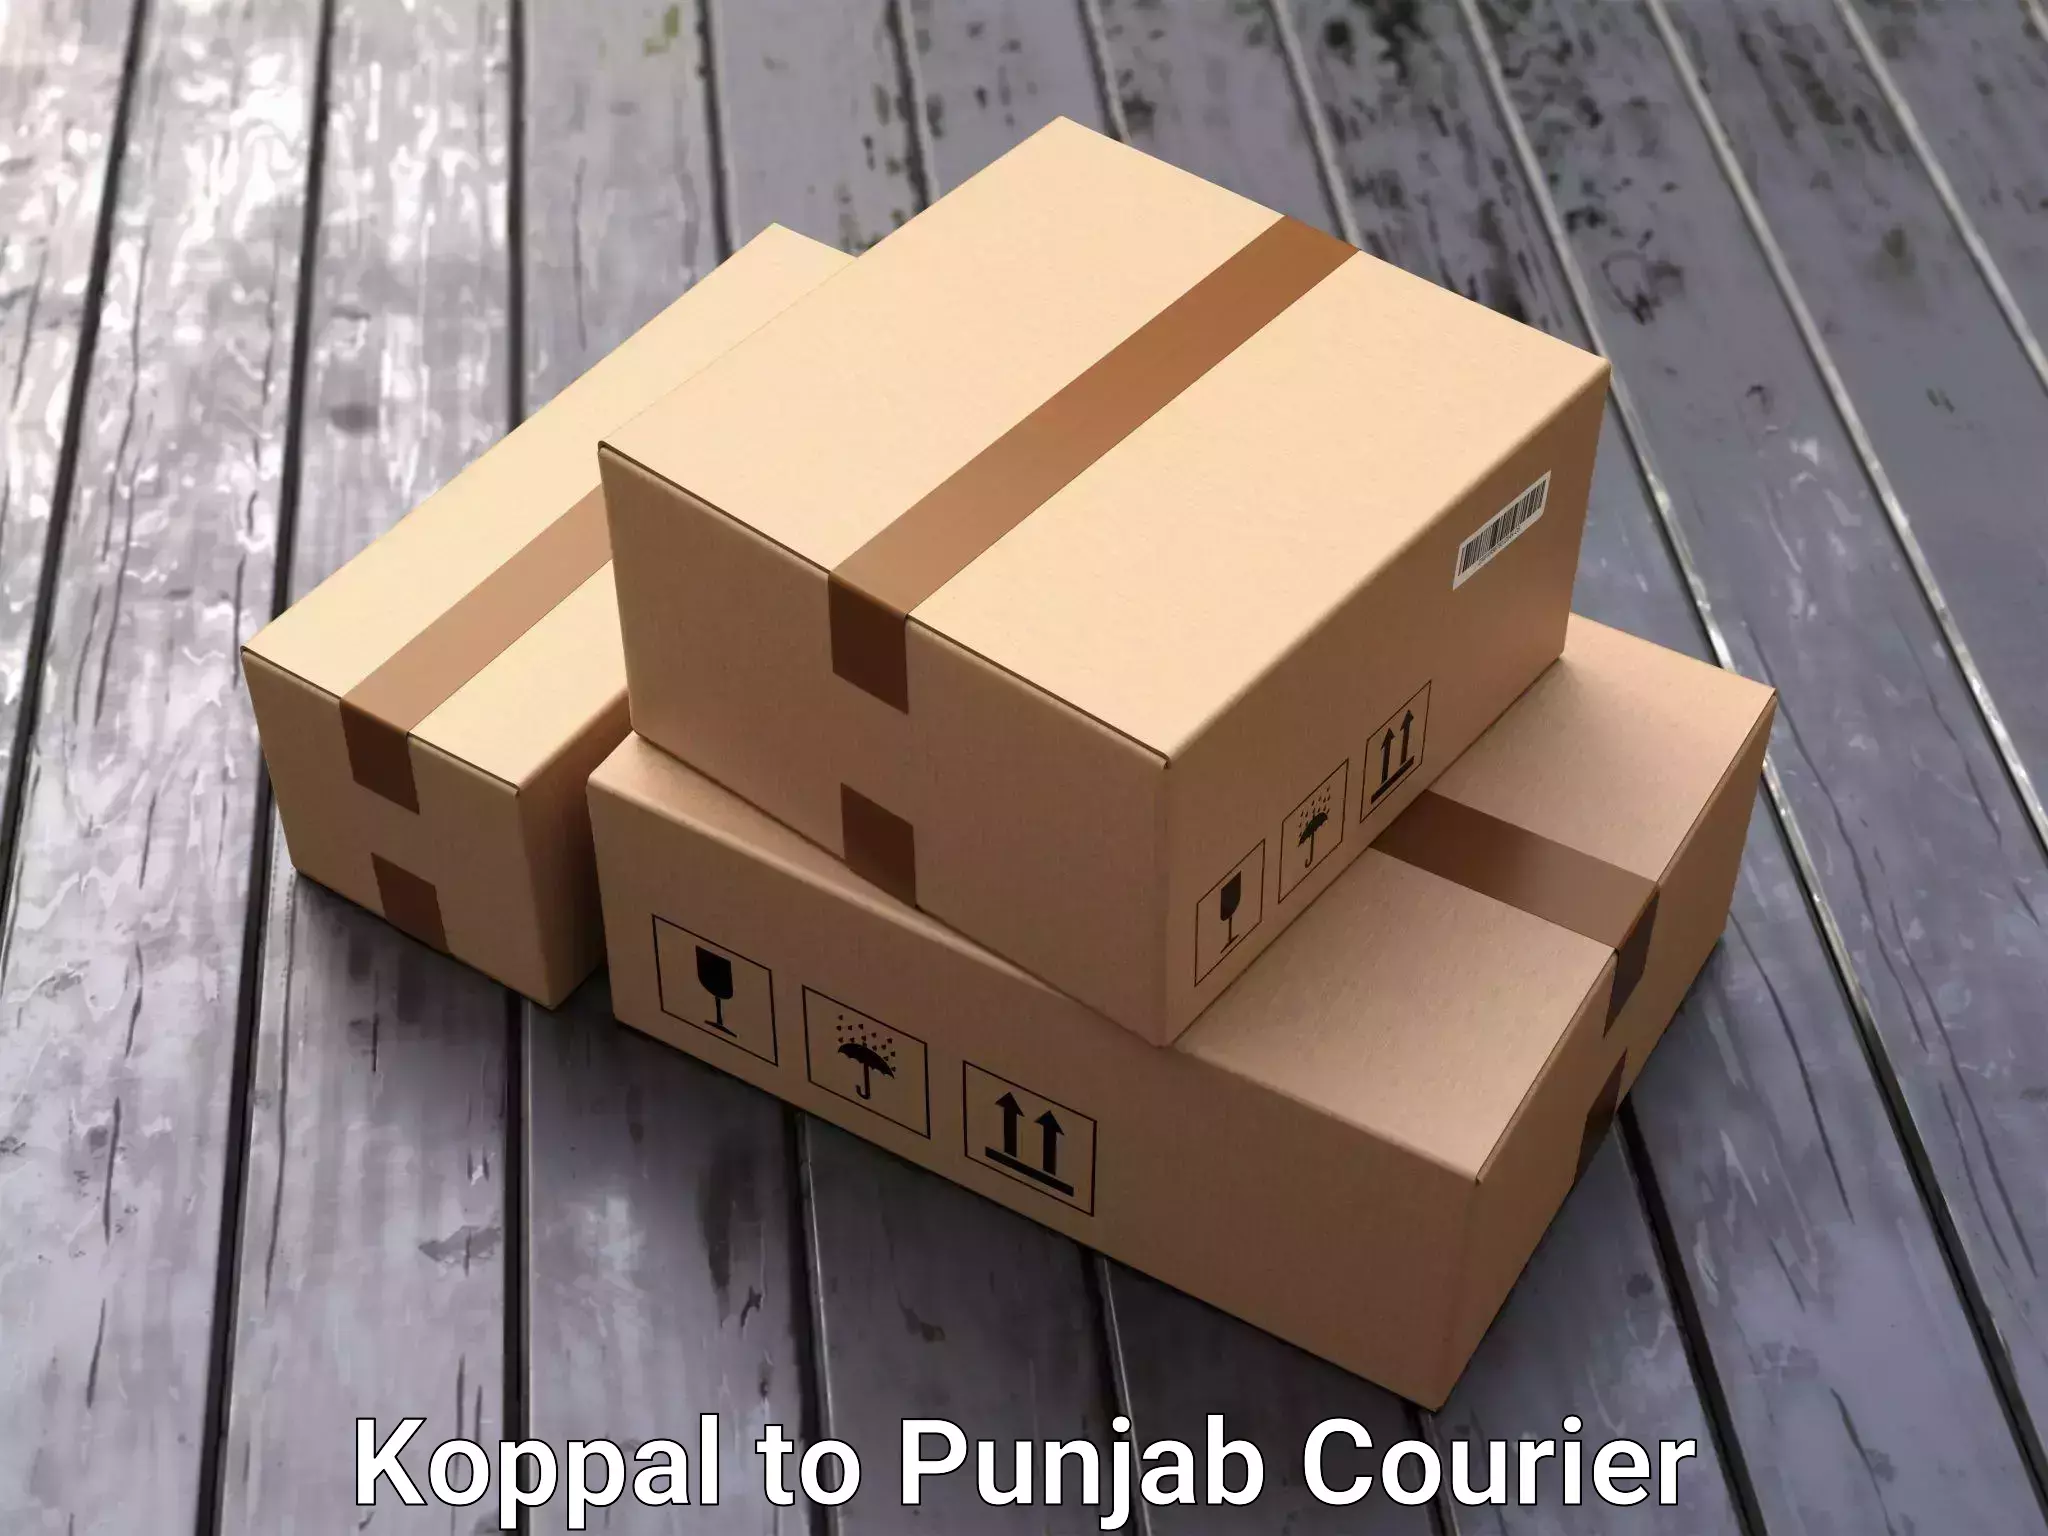 Household transport experts Koppal to Punjab